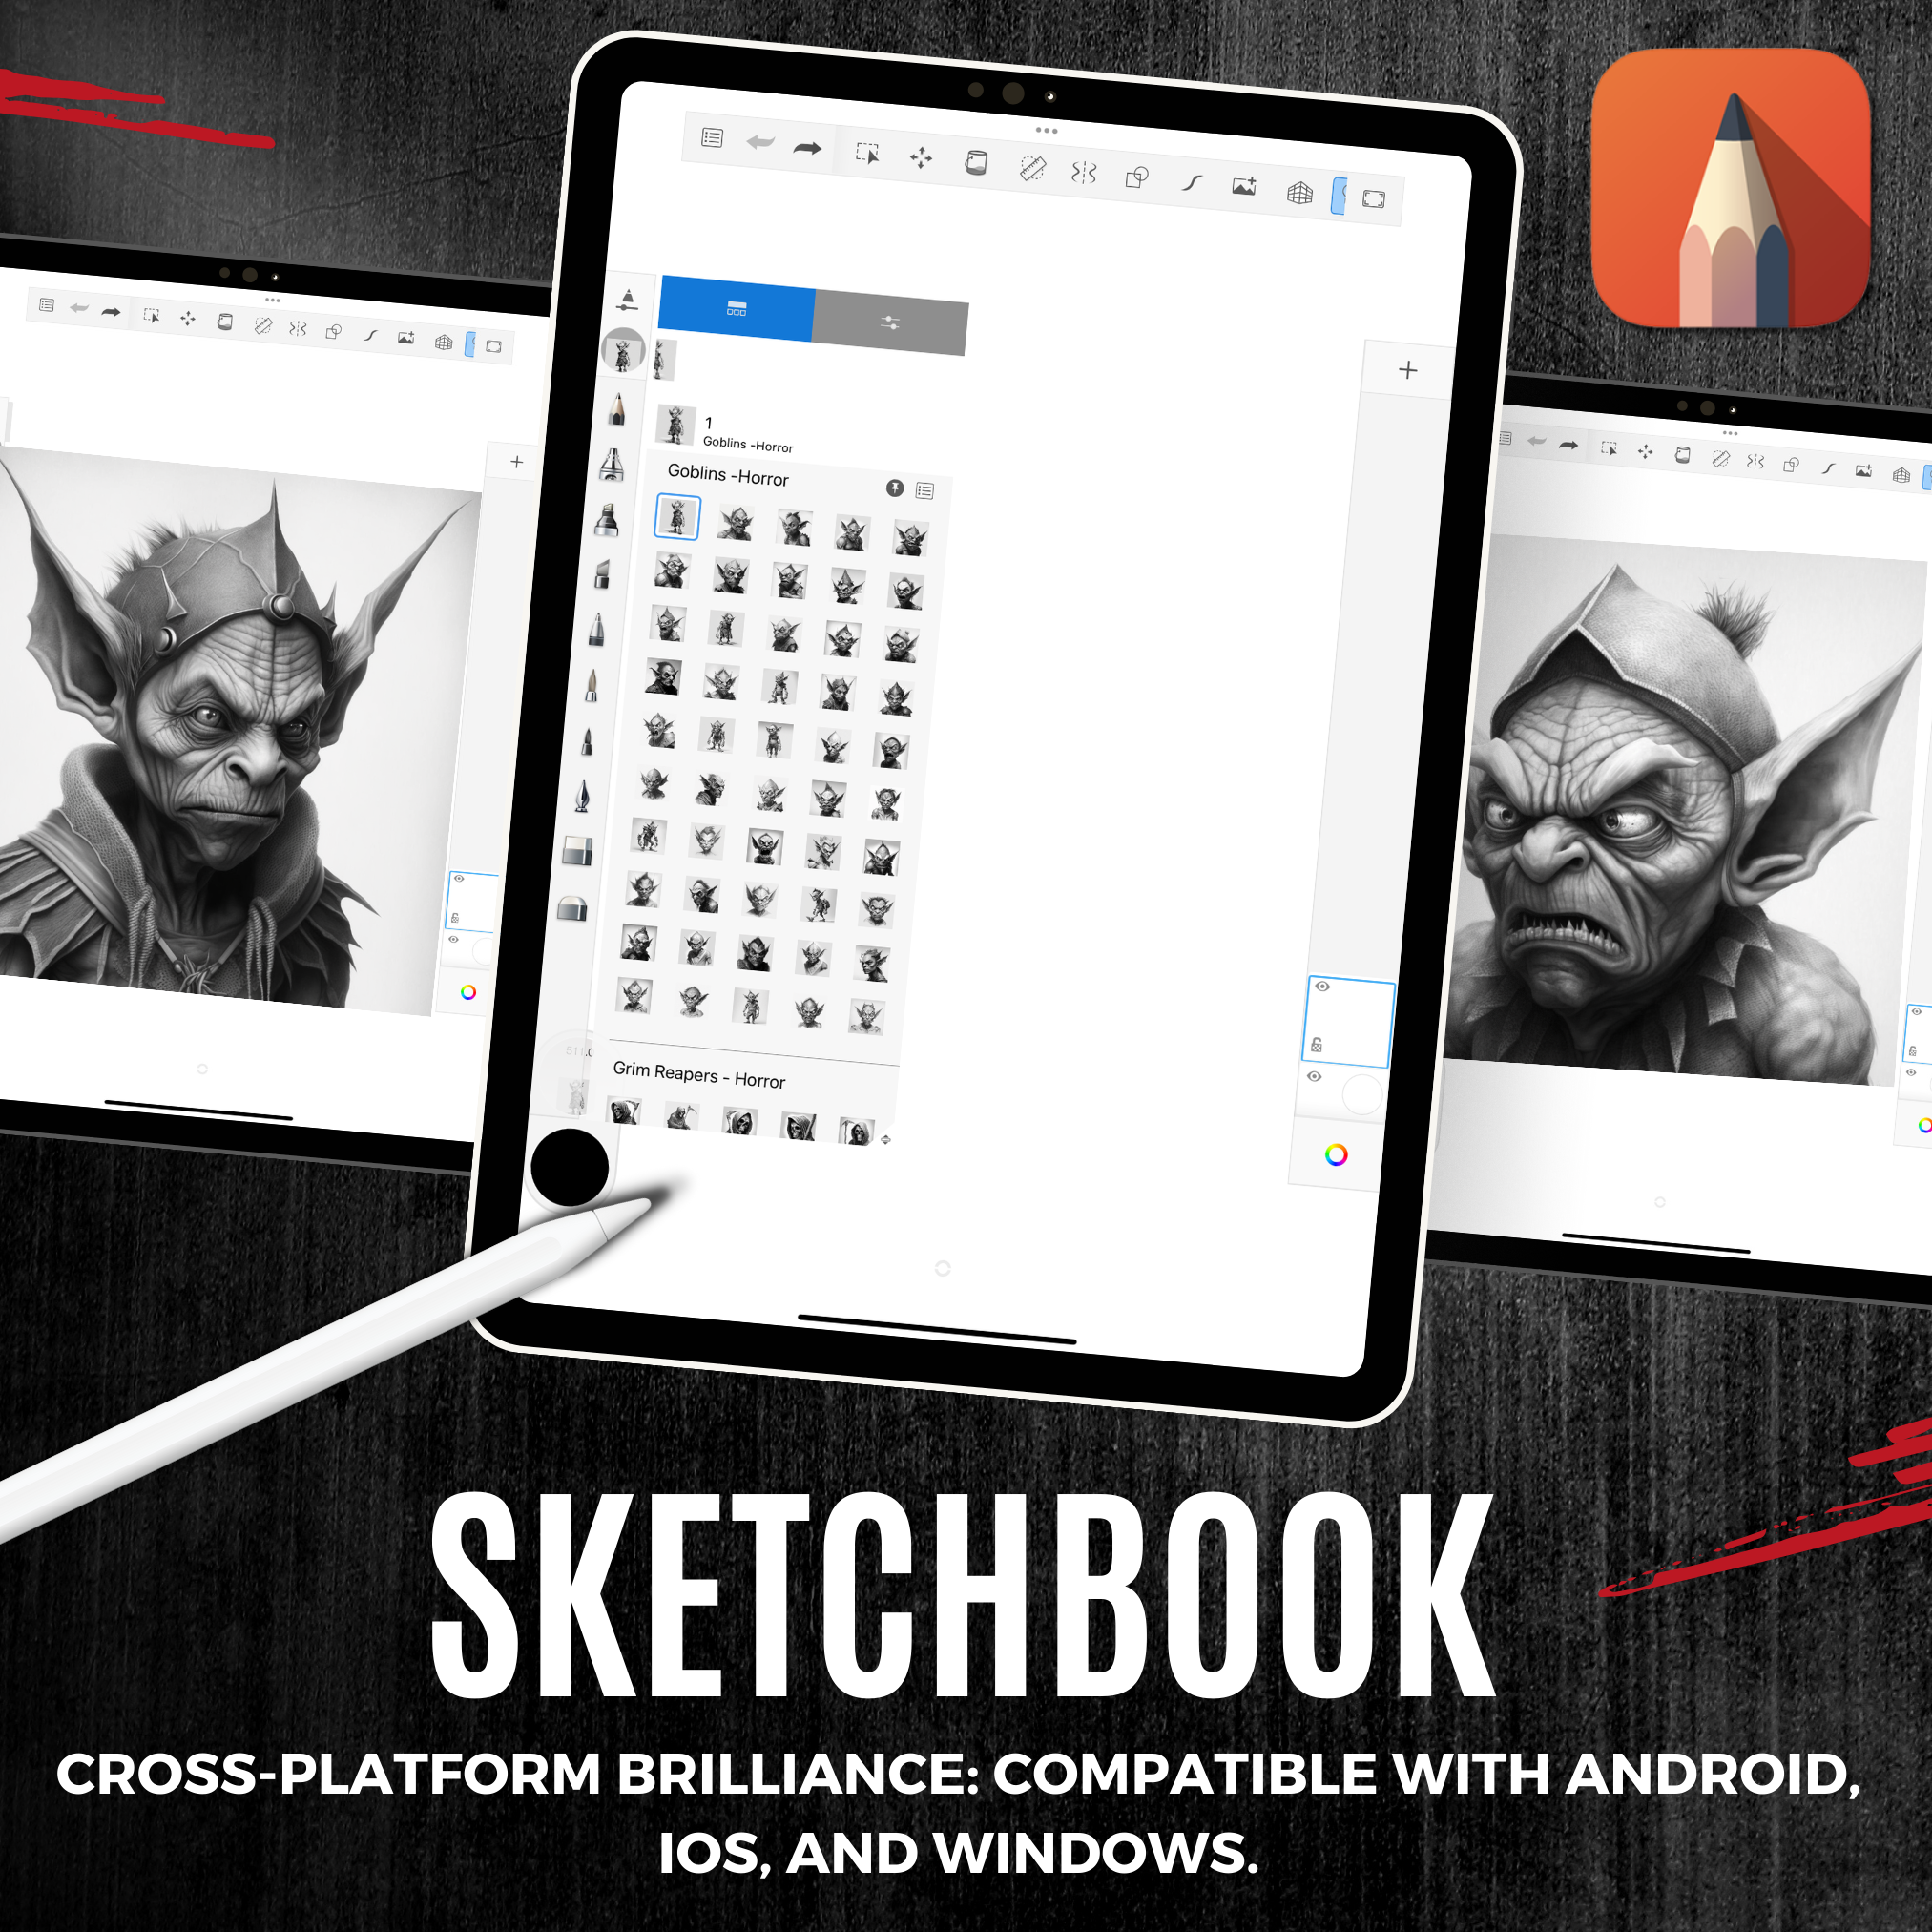 Colección de diseños de terror digital Goblins: 50 imágenes de Procreate y Sketchbook 